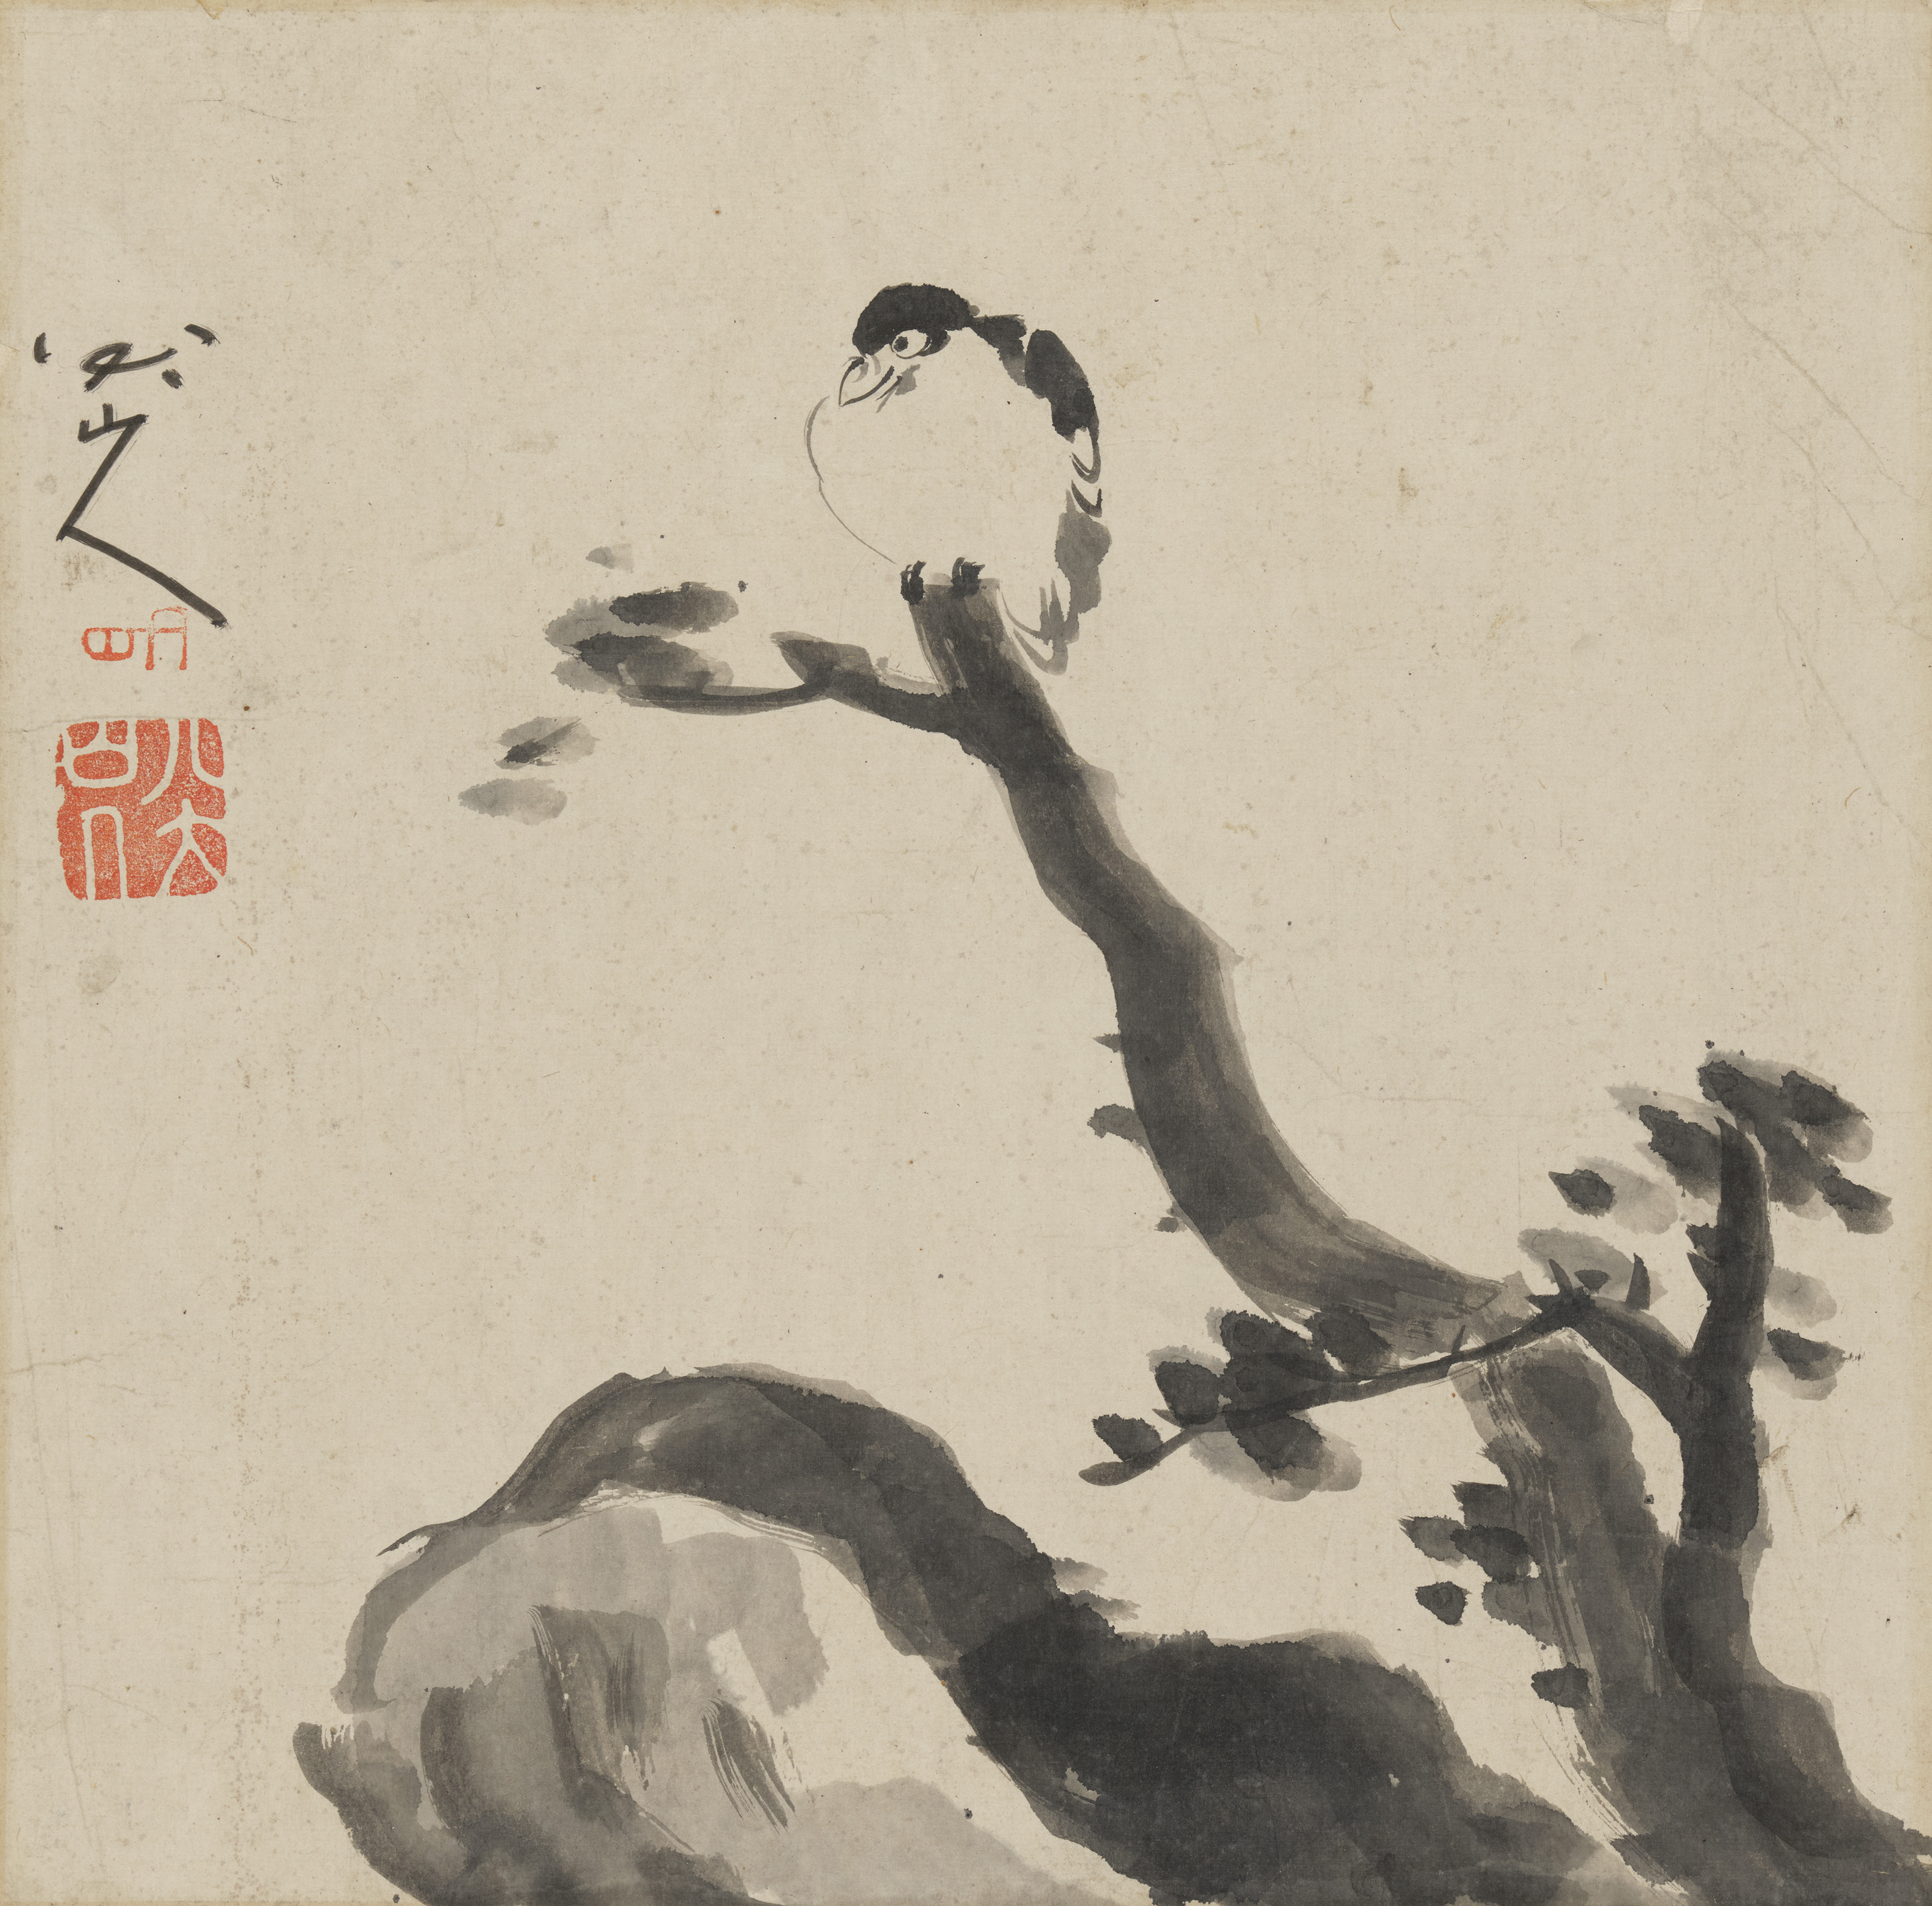 After Zhu Da (Bada Shanren) . Early 20th century - Bird on a branch.